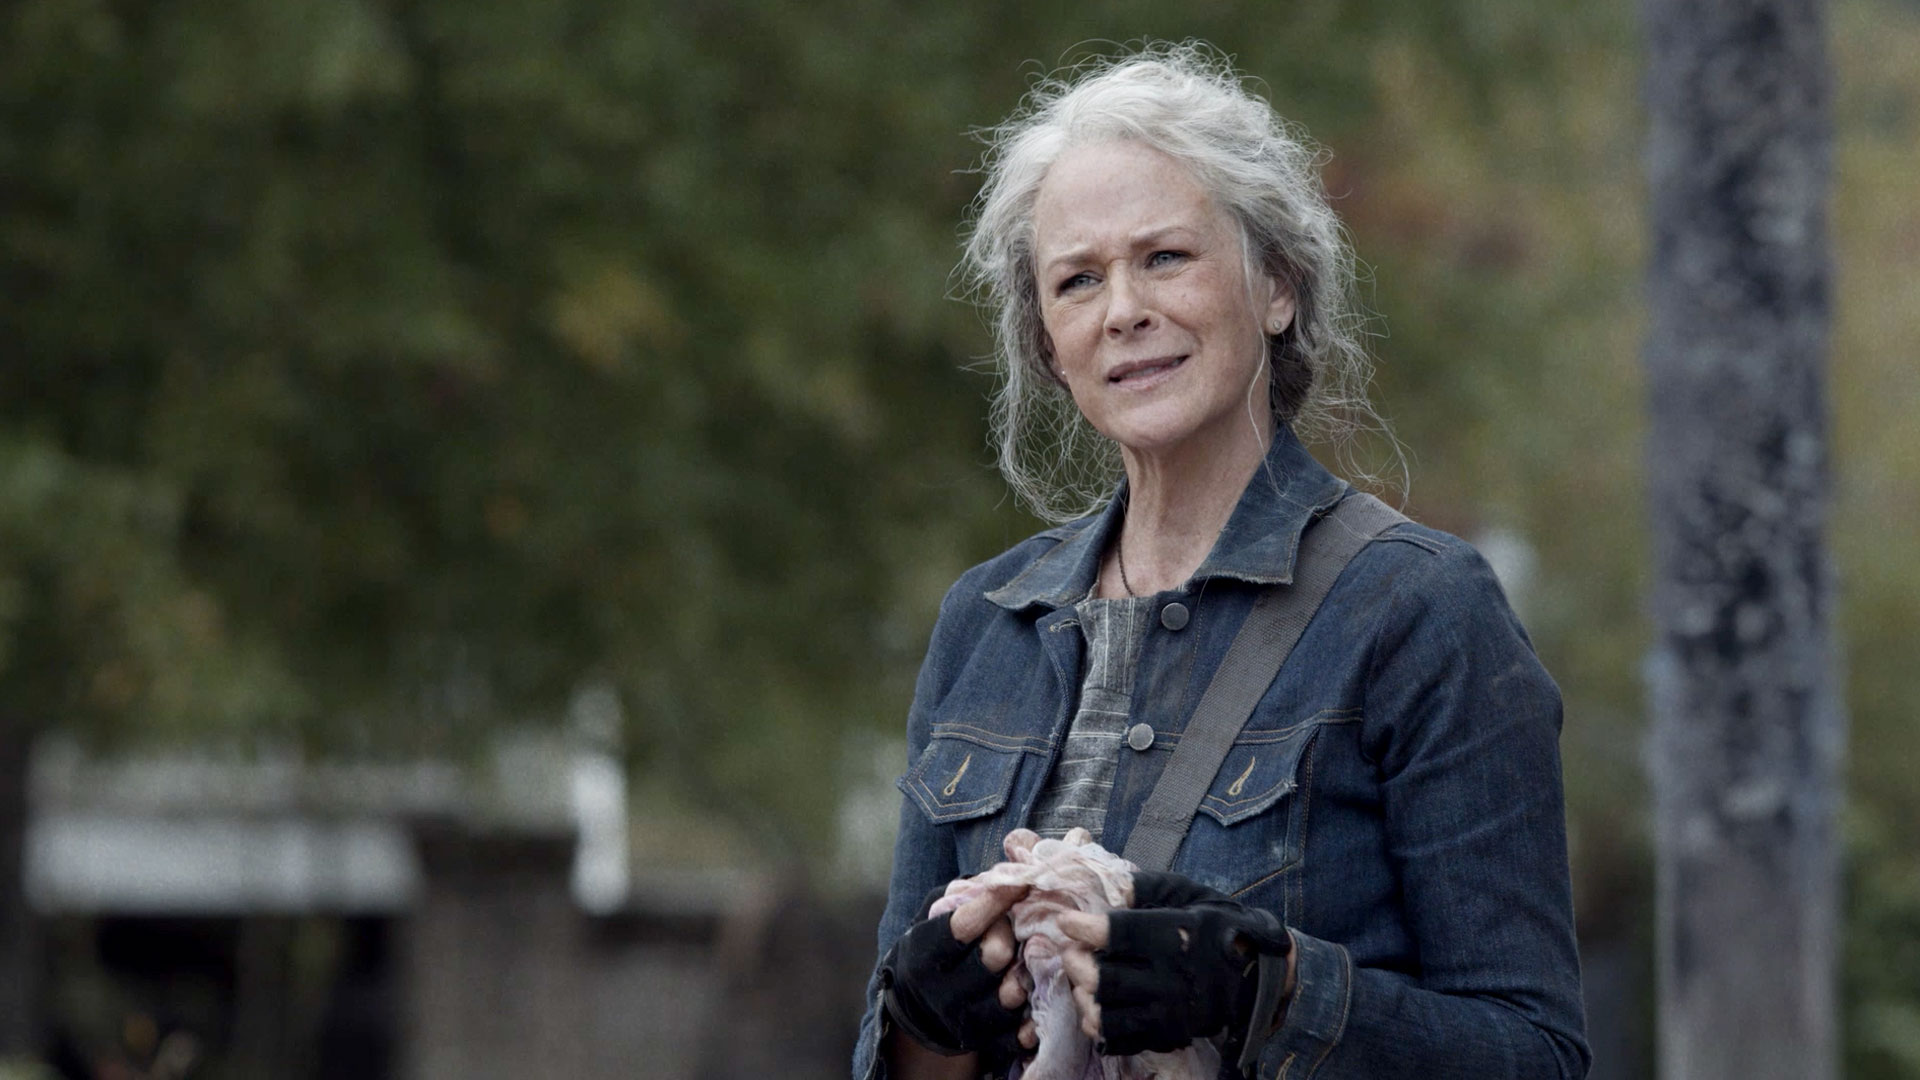 Watch The Walking Dead Sneak Peek: Season 10, Episode 21 | The Walking Dead Video Extras